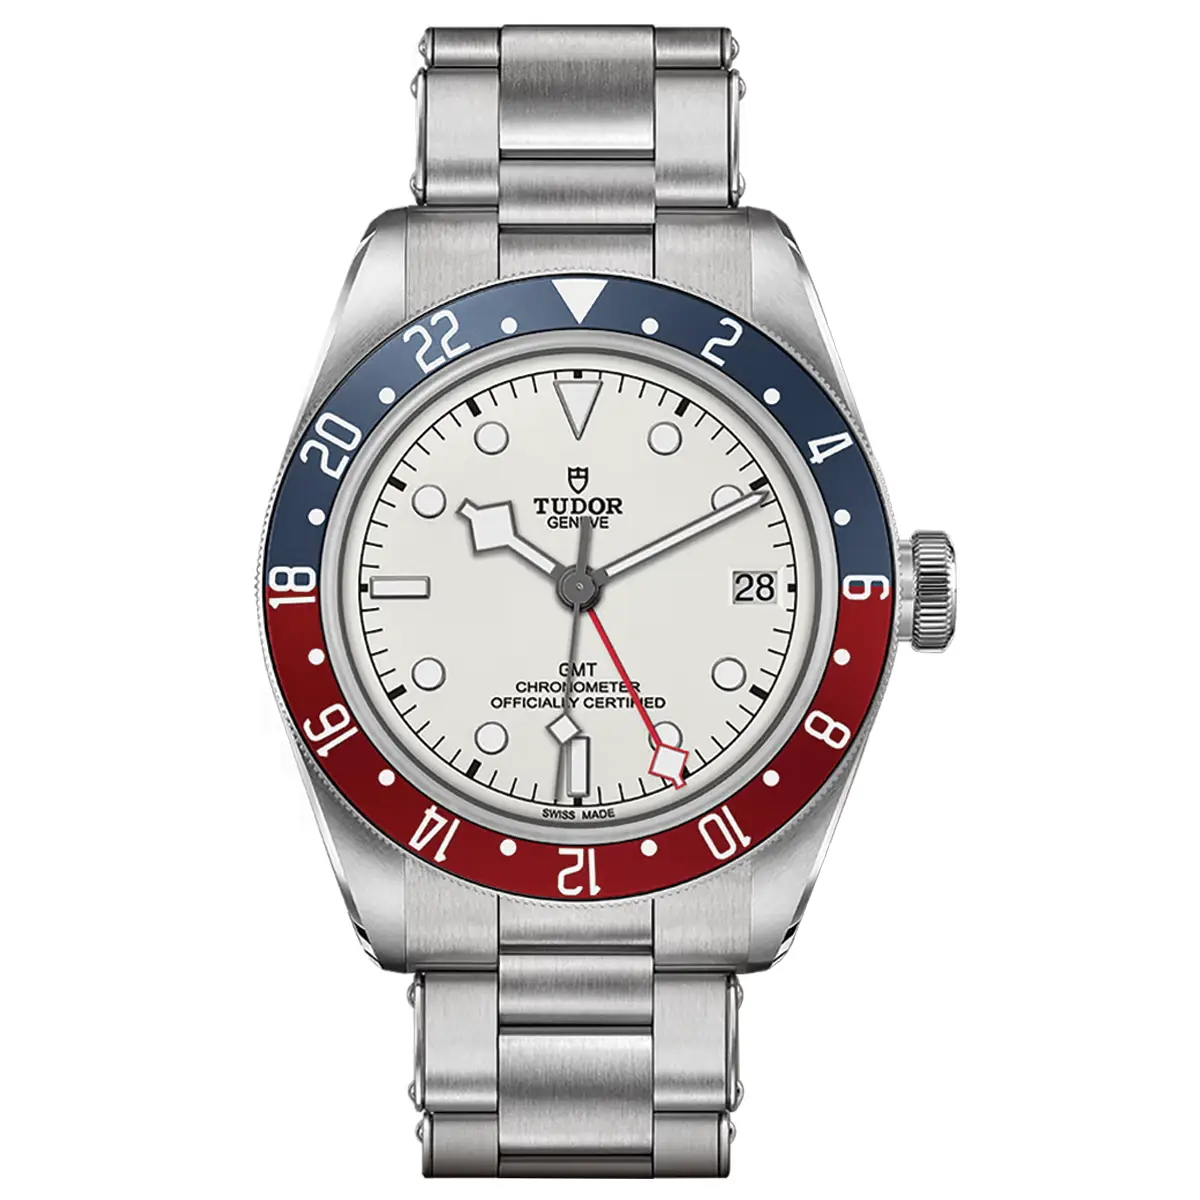 Đồng hồ Tudor Black Bay GMT M79830RB-0010 với mặt số màu trắng. Dây đeo bằng thép. Thân vỏ bằng thép.